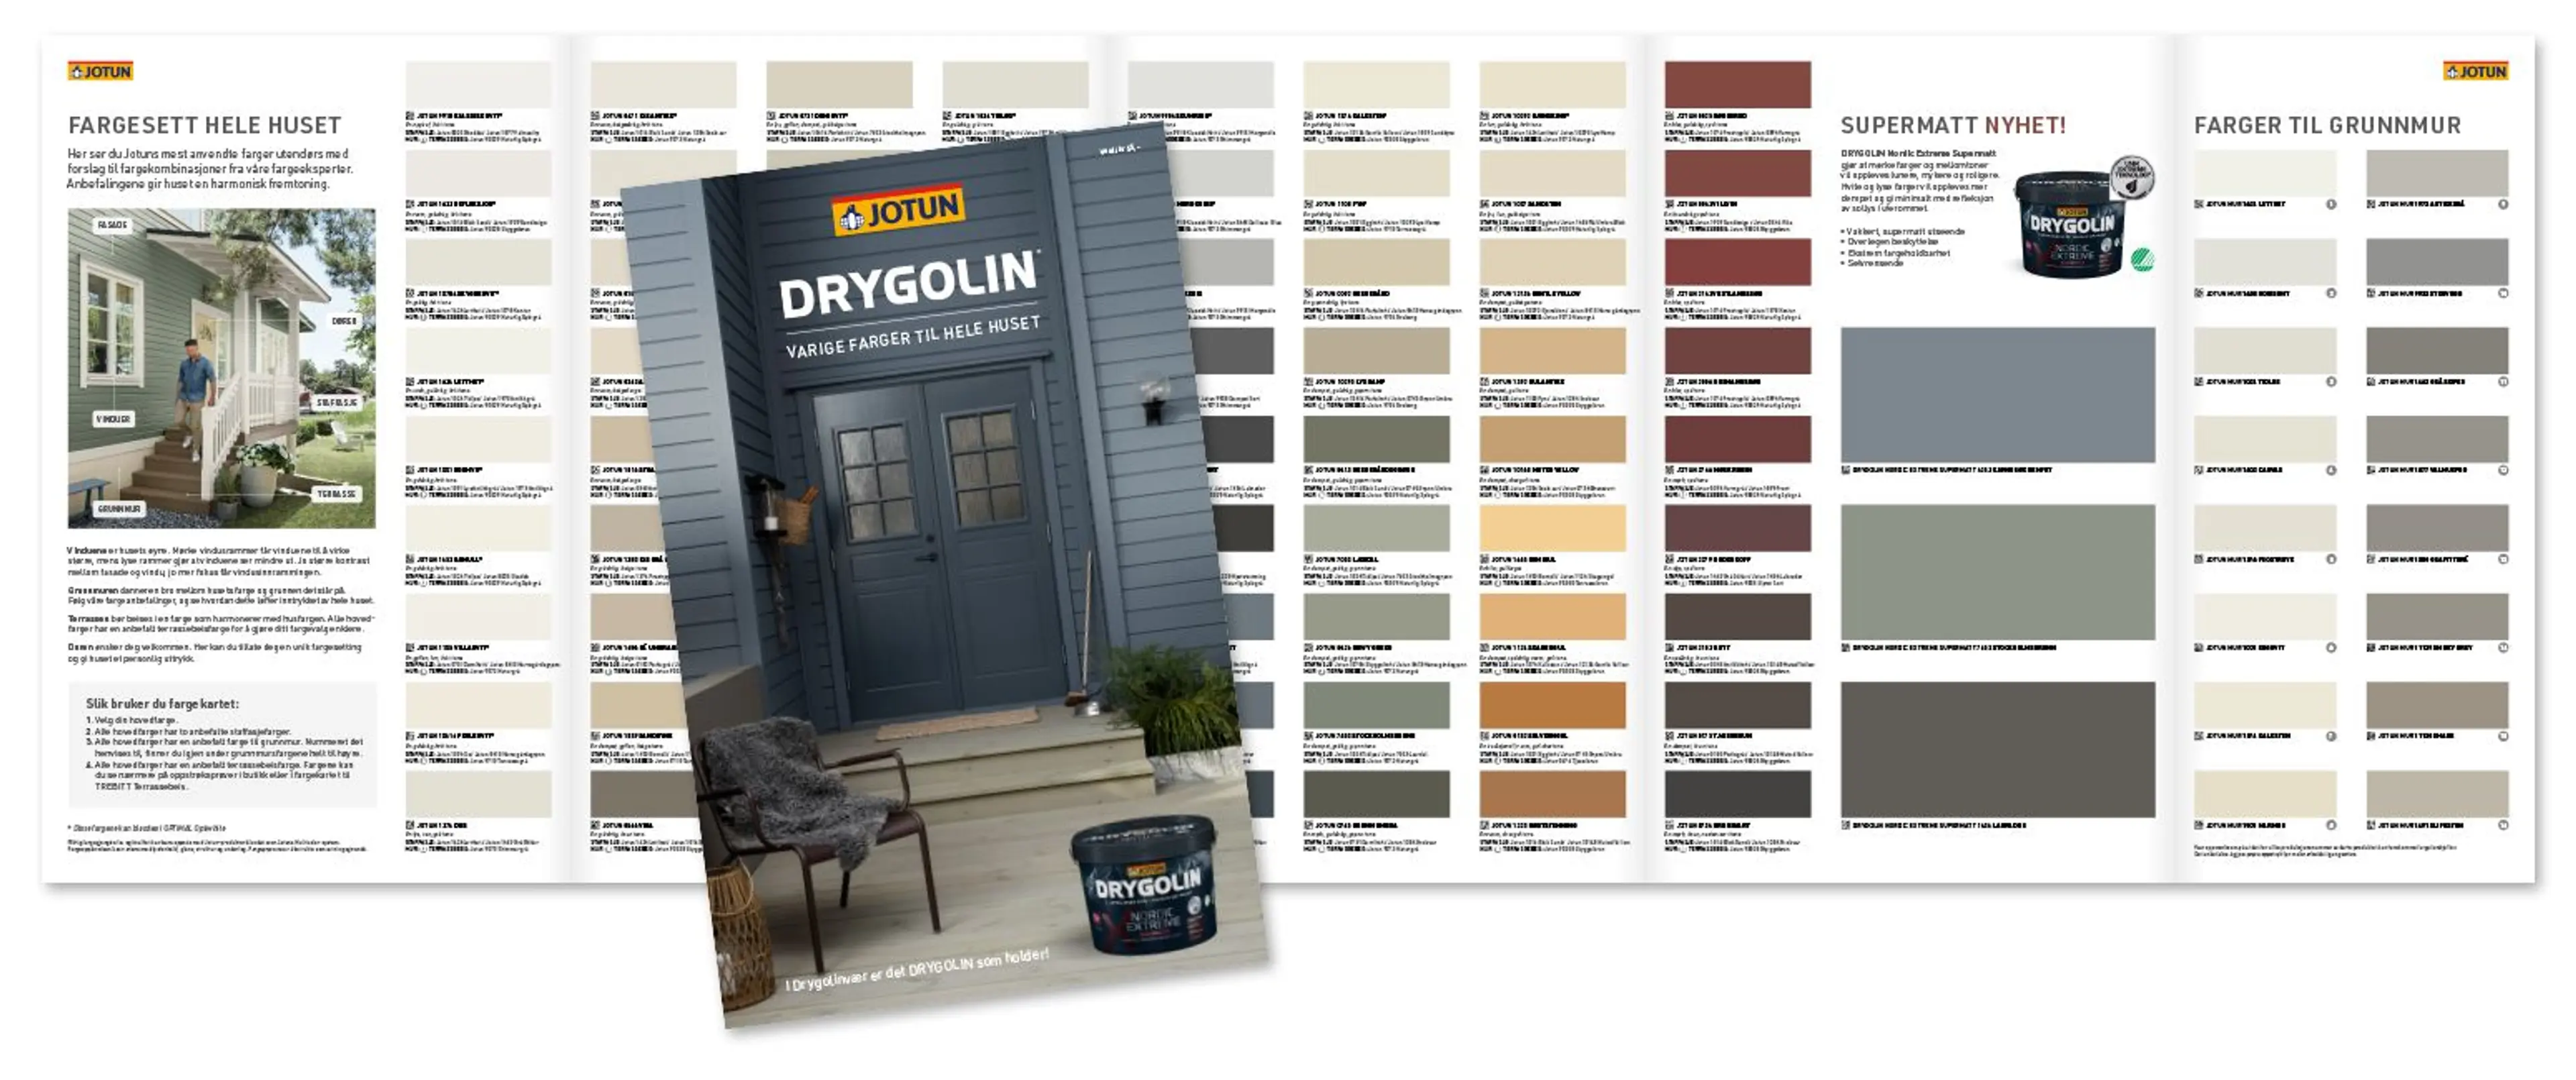 Jotuns nye Drygolin-fargekart med alle Jotuns utefarger med anbefalte kombinasjonsfarger for hele huset, inkludert grunnmur og terrassen.